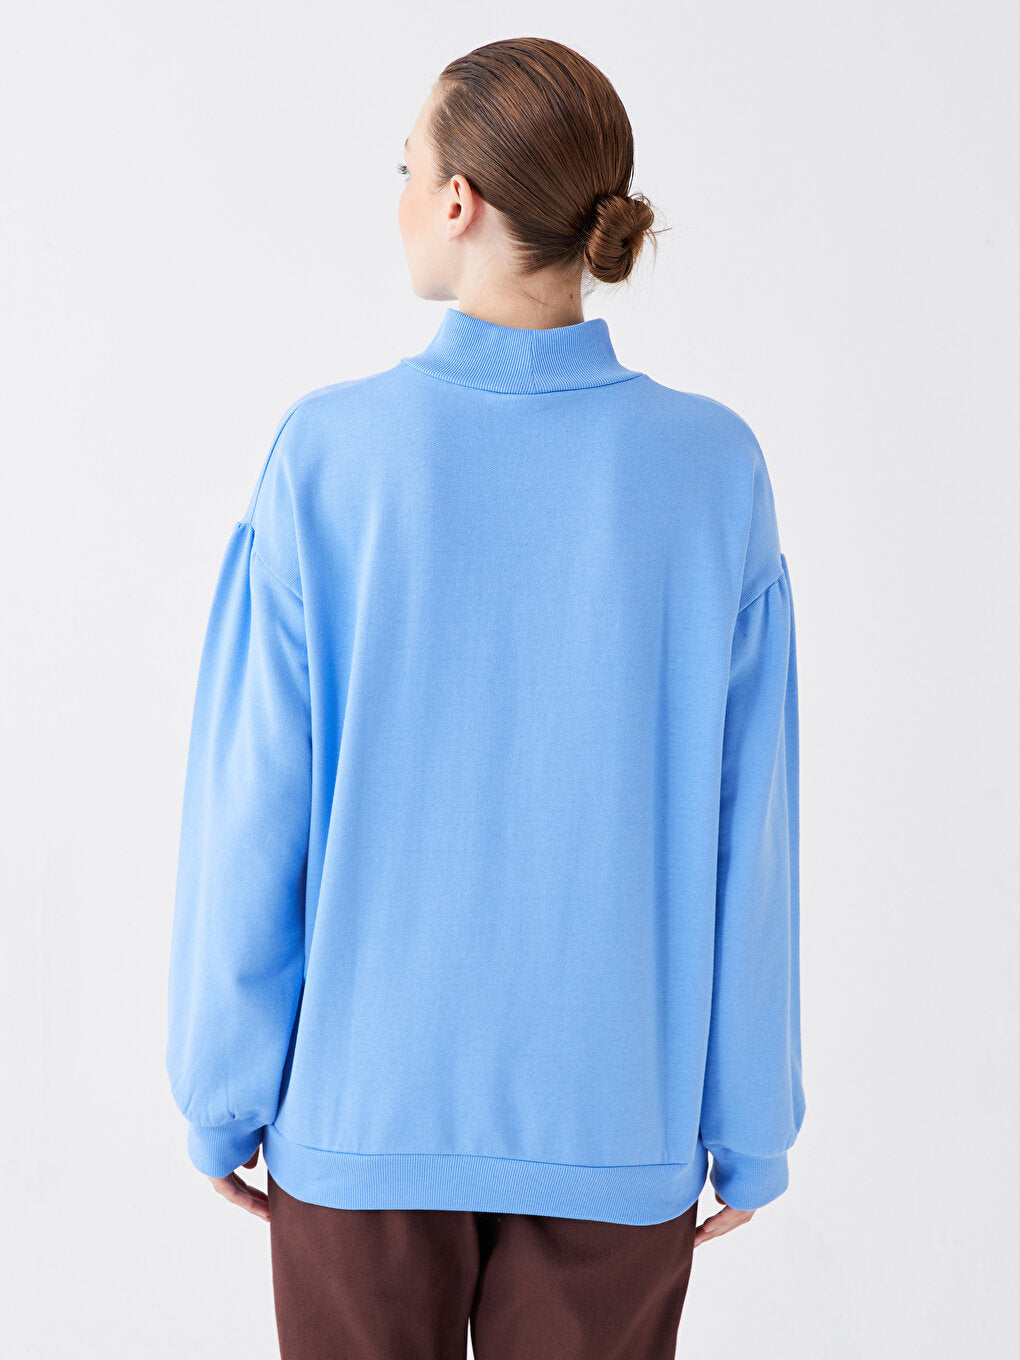 High Collar Printed Long Sleeve Oversize Women Sweatshirt Tunic